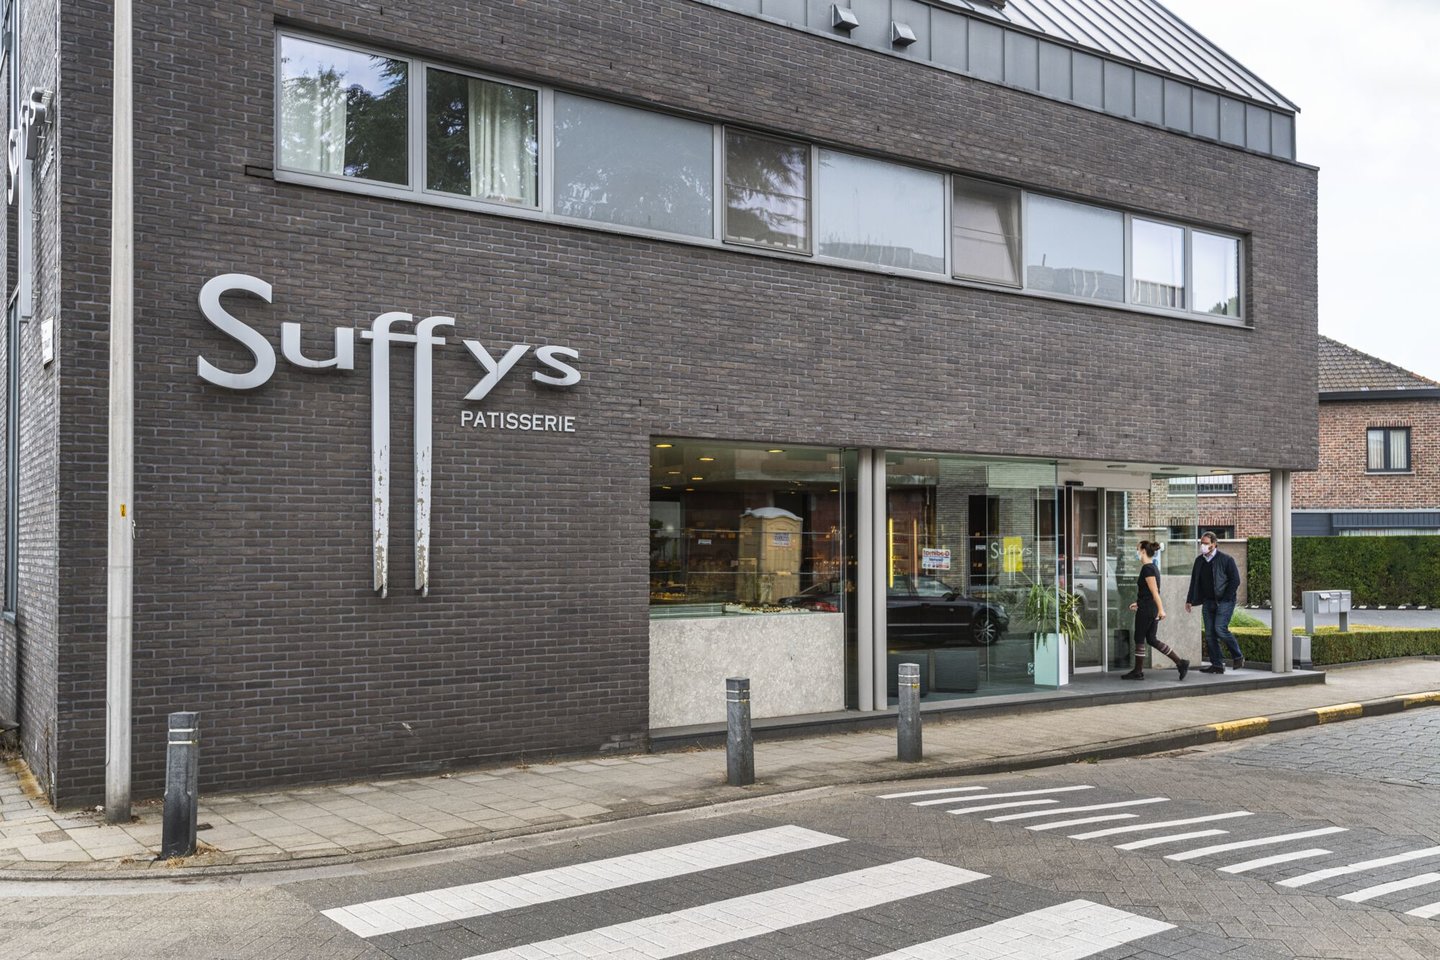 Etalage van bakkerij Suffys in Sint-Denijs-Westrem